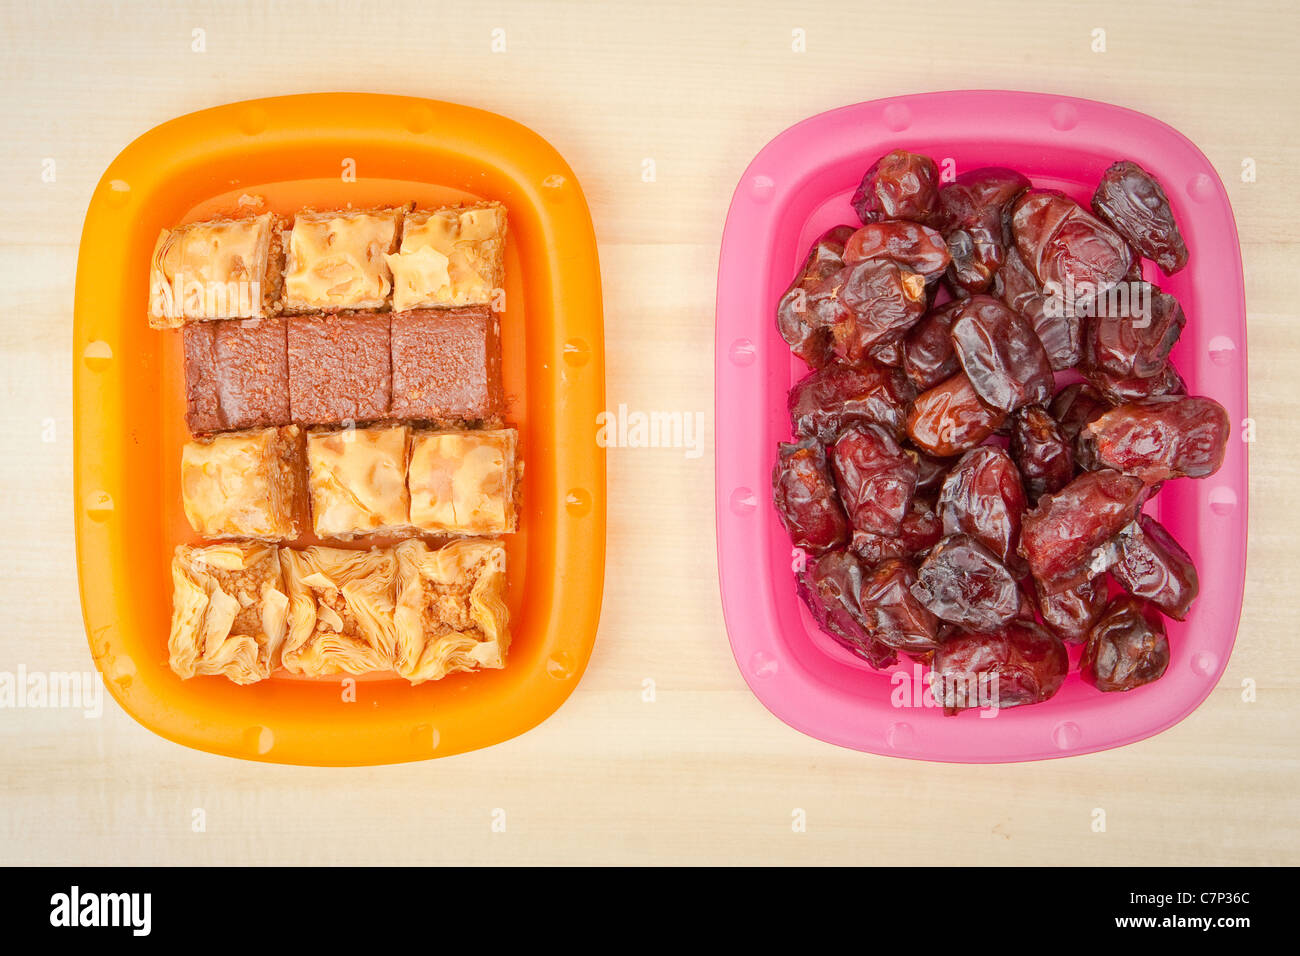 Platten aus Baqlawa und Termine, typisch für Essen im Ramadan und Eid-festivals Stockfoto